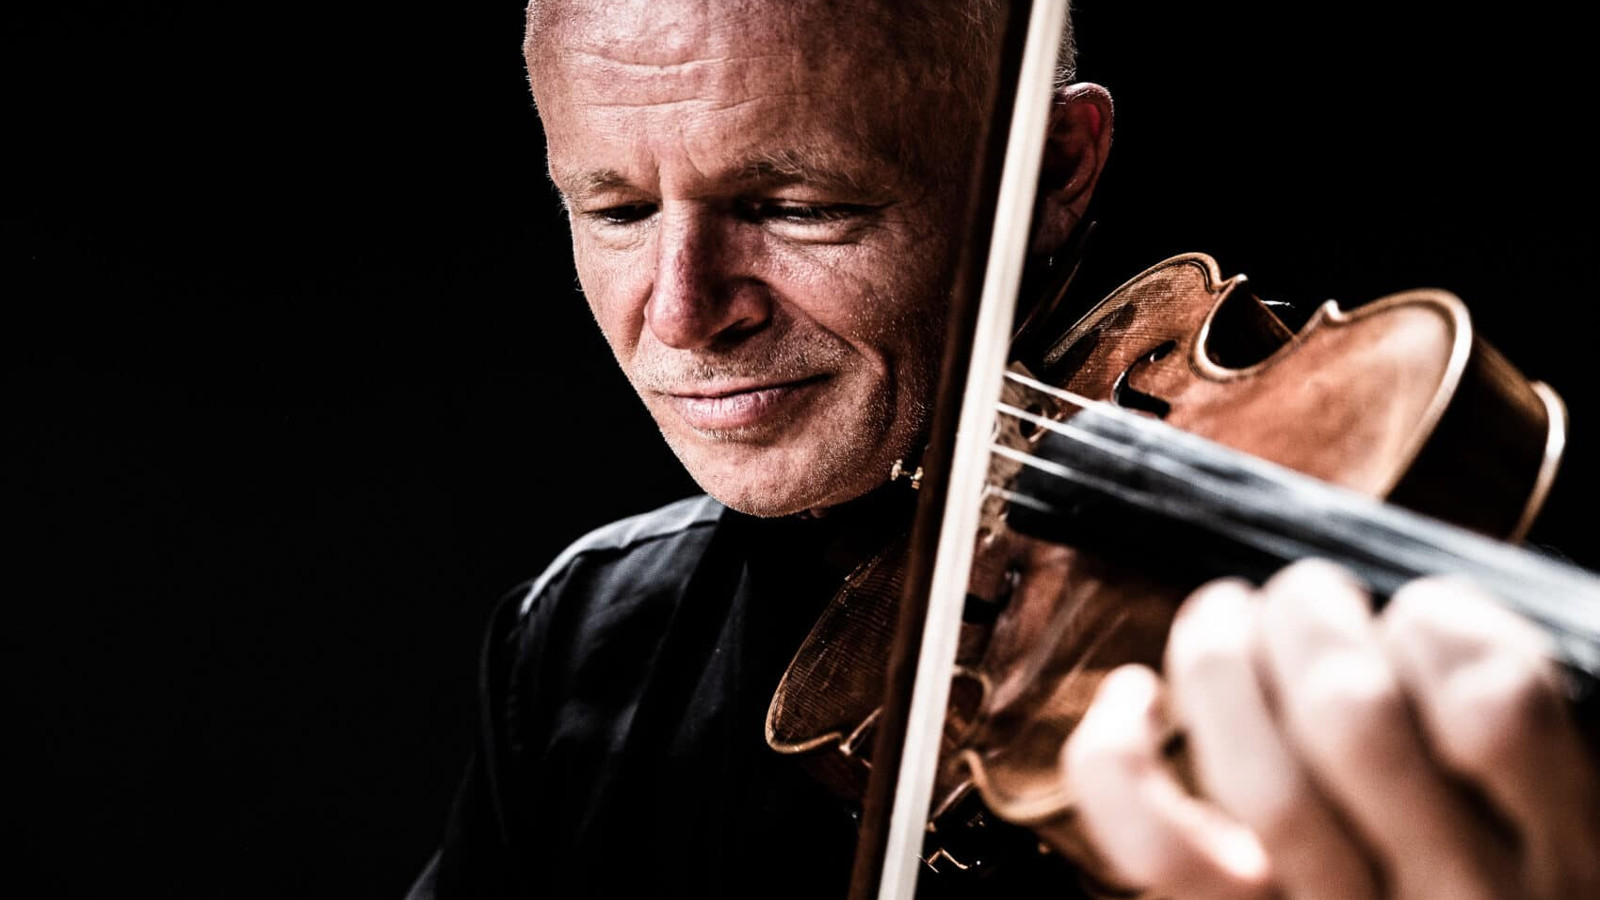 Kuvassa on Thomas Zehetmair soittamassa viulua lähikuvassa, jossa näkyy kasvot ja käsiviululla.